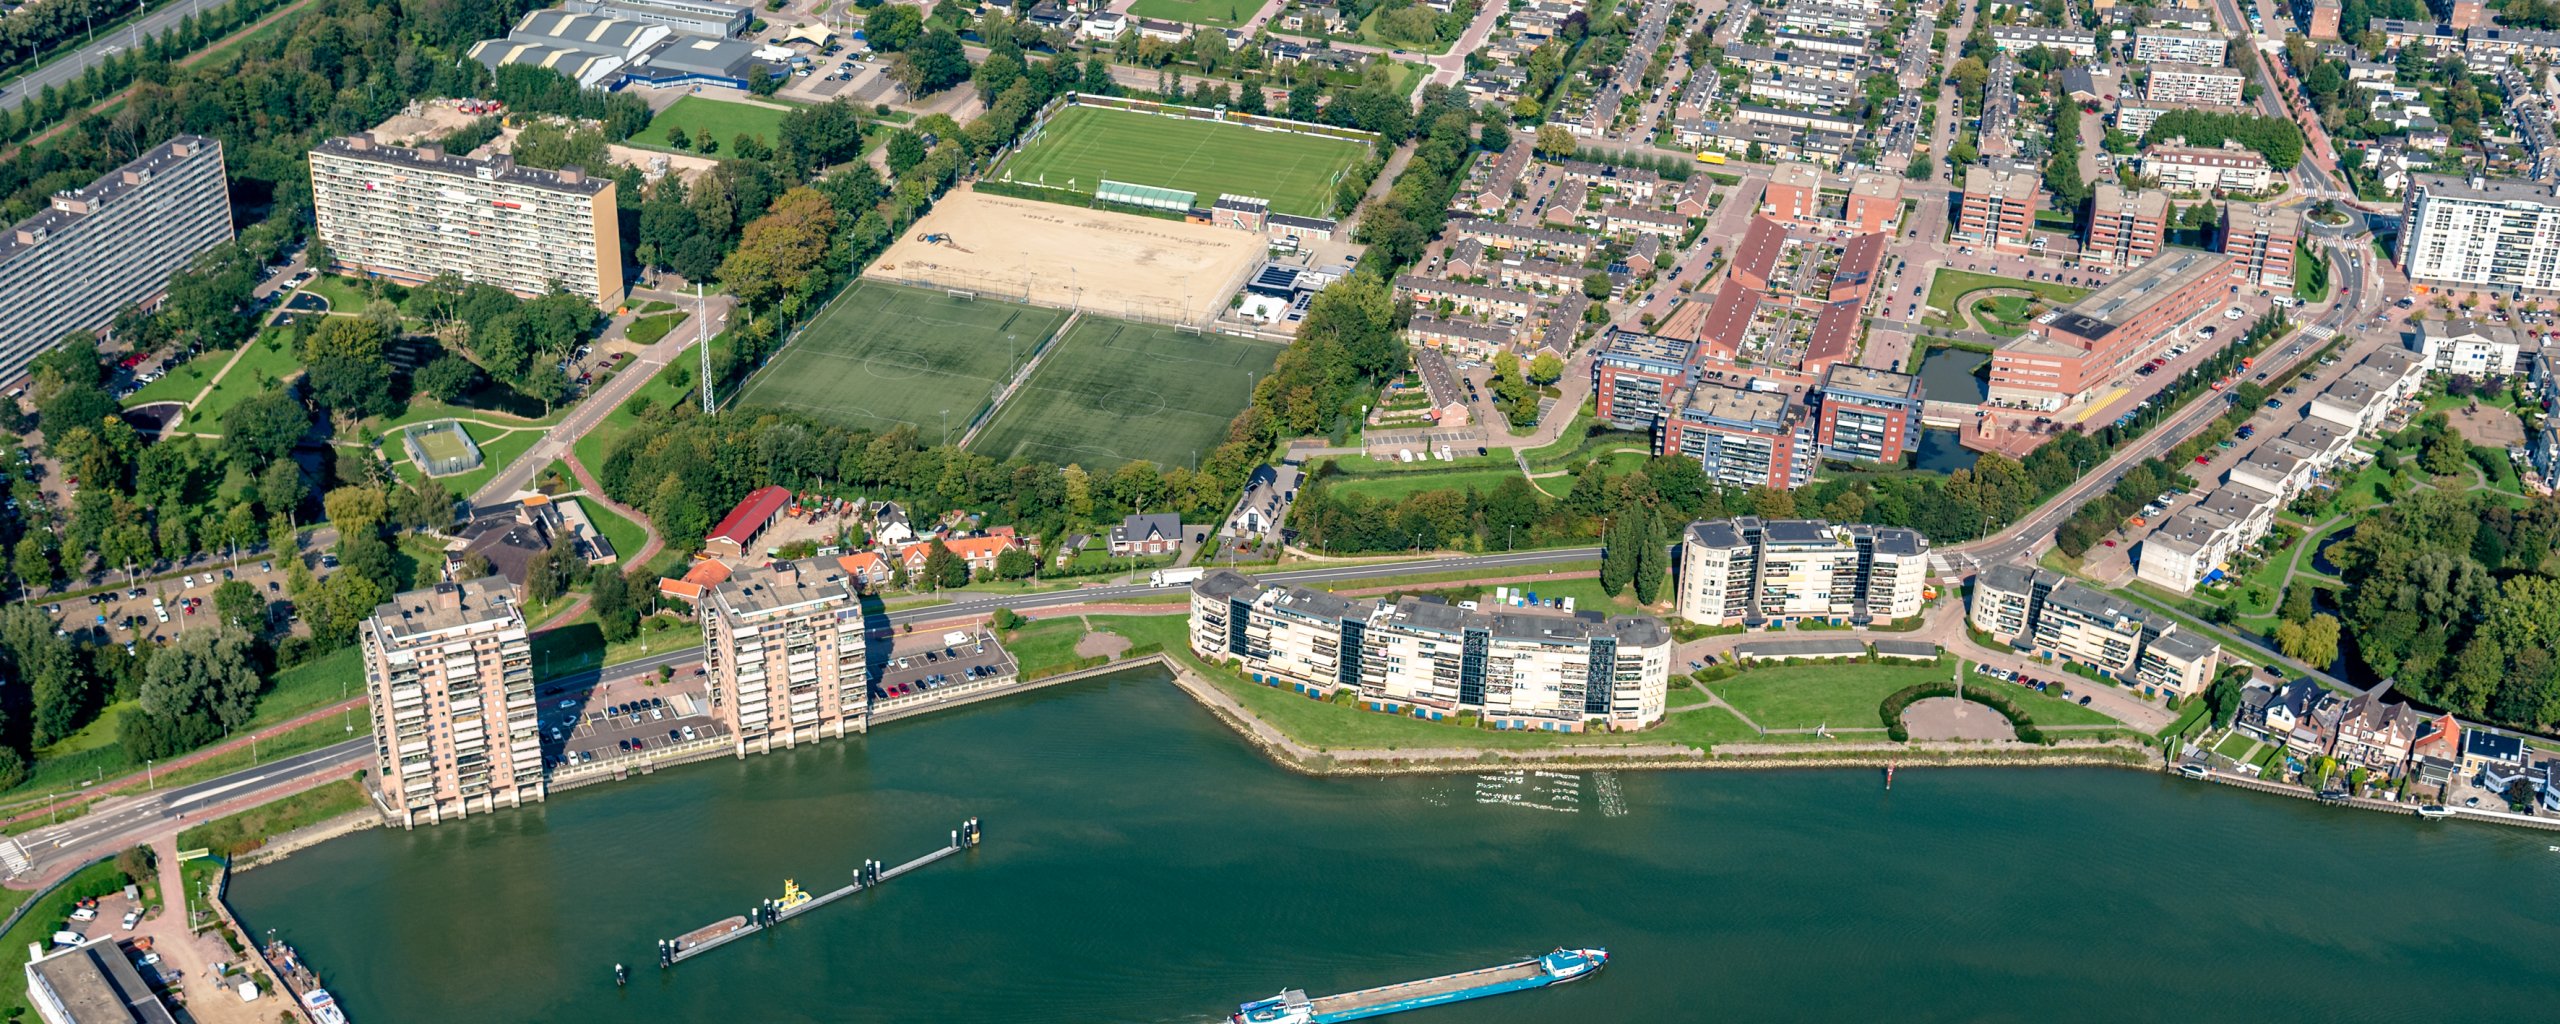 Luchtofoto van Capelle met de Hollandse IJssel op de voorgrond daarachter de Ketensedijk en de IJsselzoom de voetbalvelden en verpleeghuis Rozenburcht